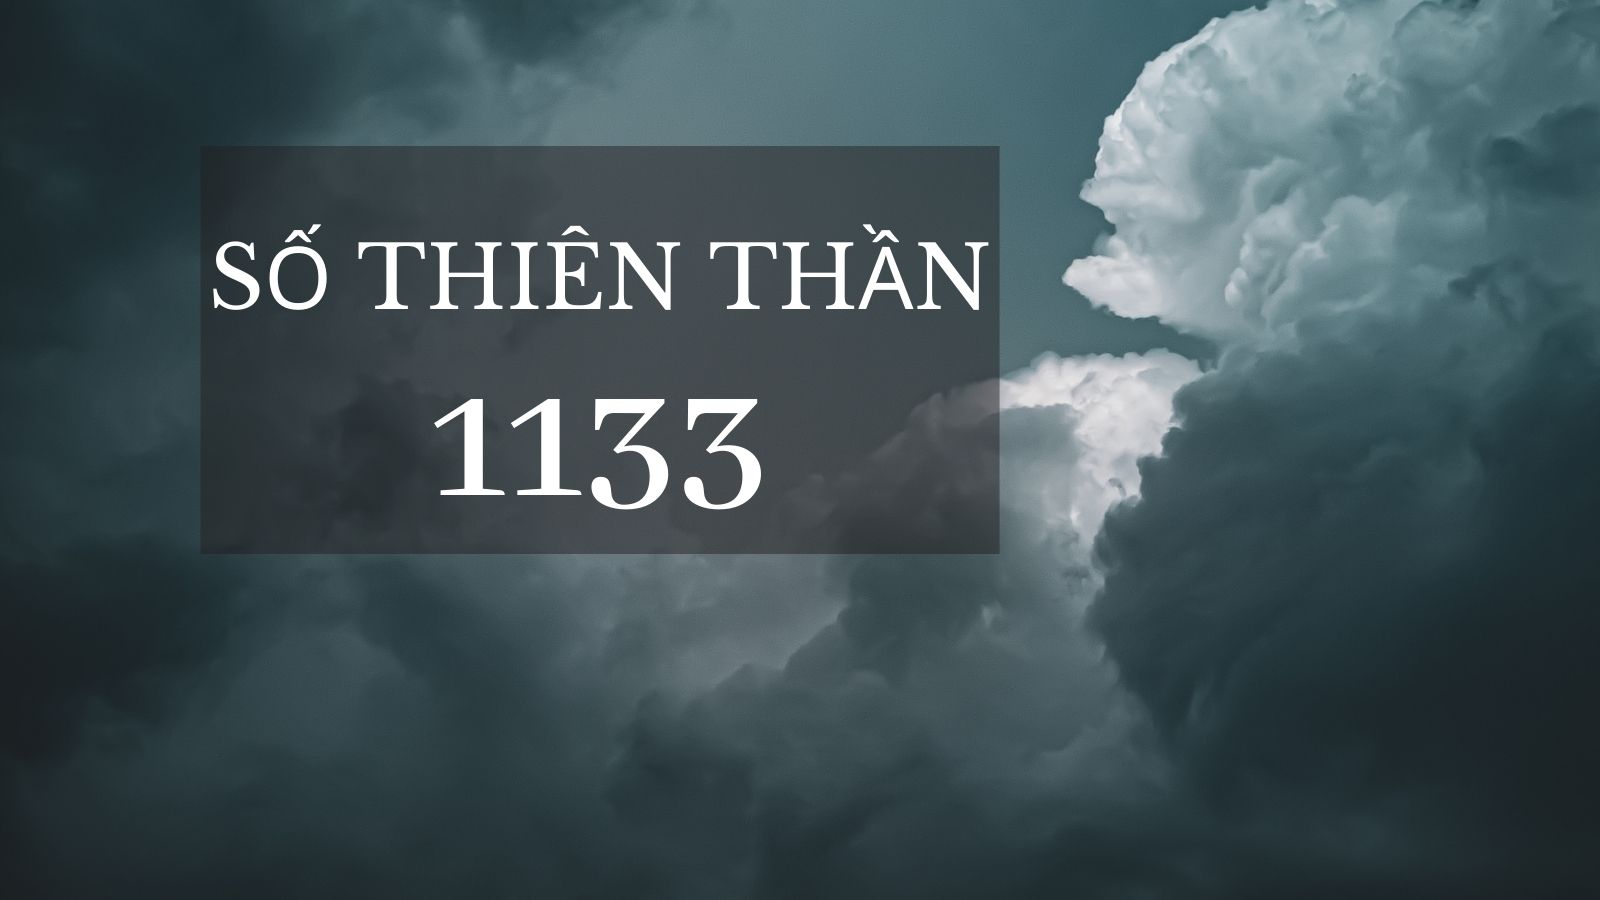 Số thiên thần 1133 – Những điều tích cực và tương lai đầy hứa hẹn ở phía trước bạn